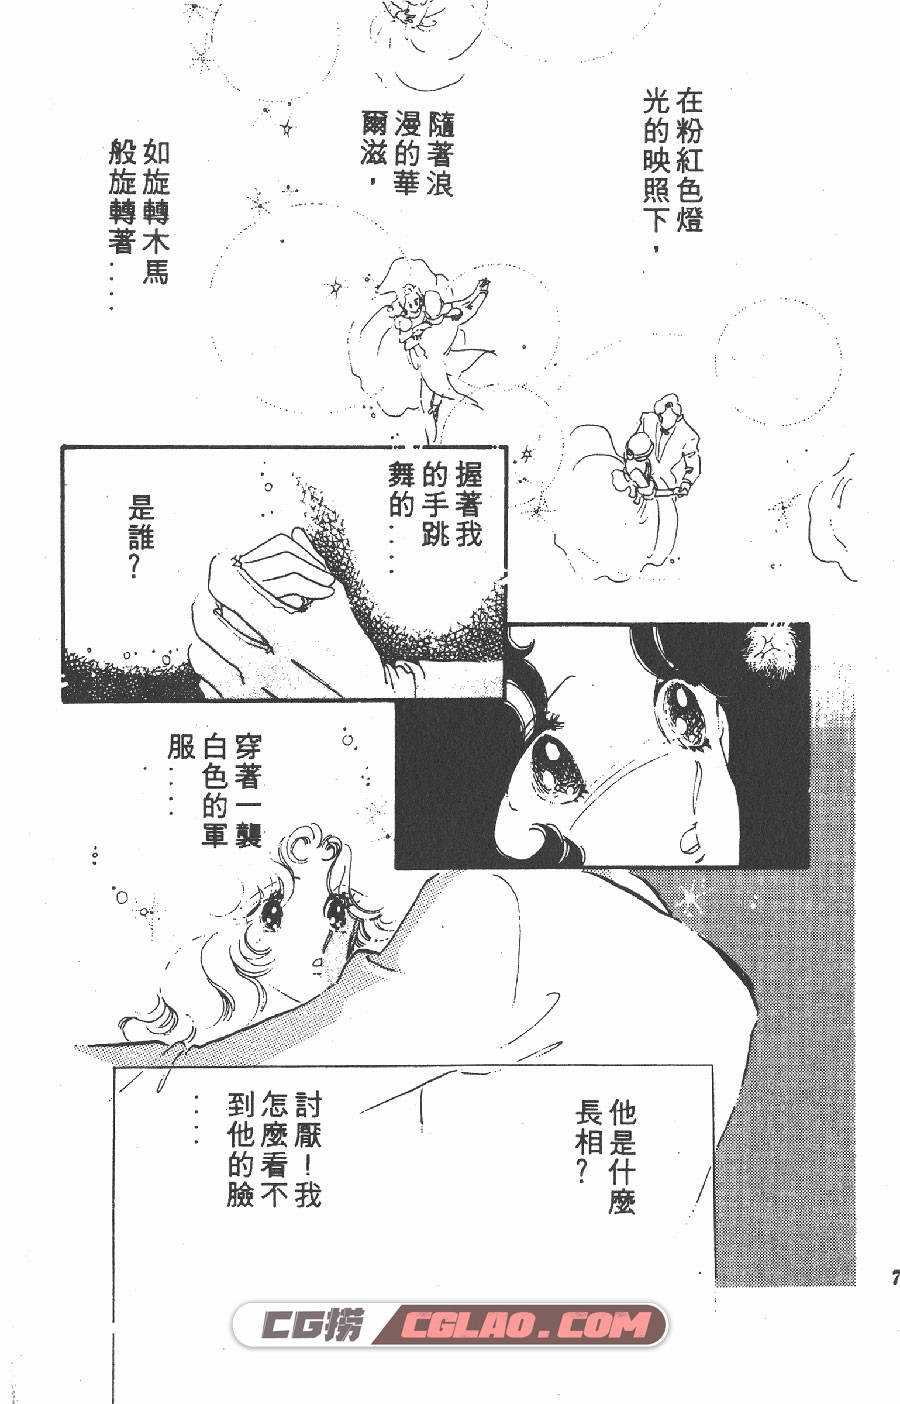 白色圆舞曲 齐藤千穗 1-4卷 漫画全部完结下载 百度网盘,BSL01-003.jpg